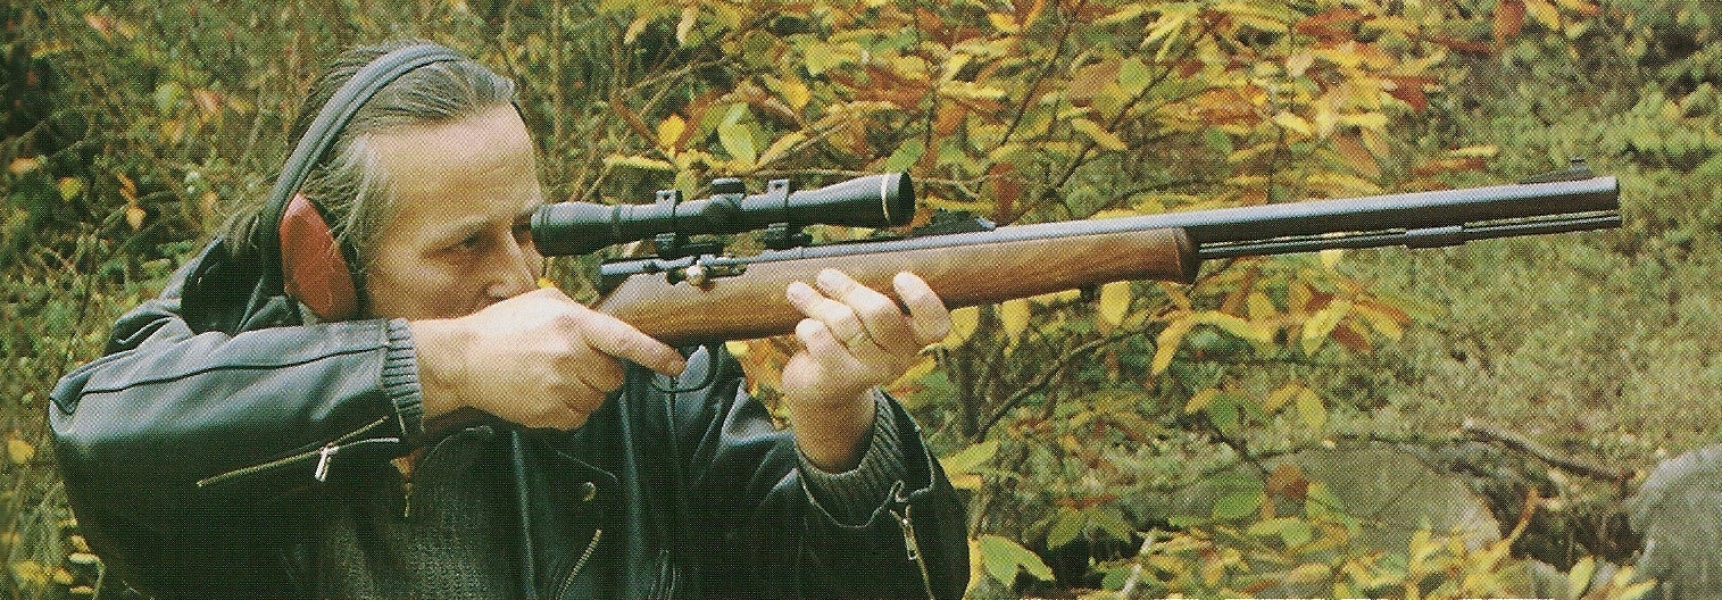 Rémi Bourgeois en 1998, quand il effectuait avec nous des tests sur le terrain de la carabine Ardesa « In Line rifle » de calibre .50 à poudre noire.